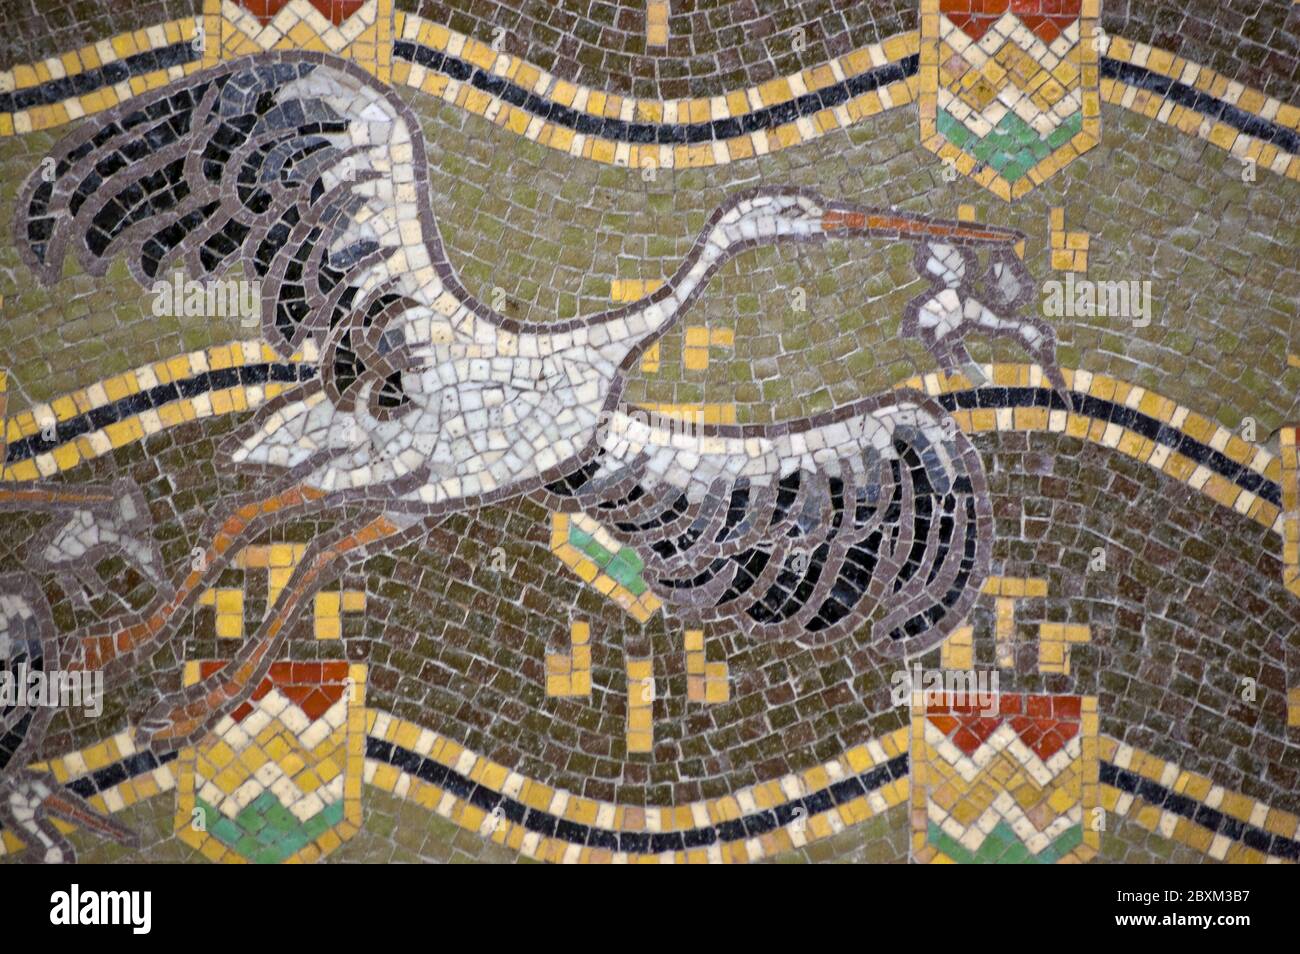 Mosaik mit fliegenden Weißstörchen. Lateinischer Name für den Vogel ist Ciconia ciconia. Außenmauer des ungarischen Pavillons, Giardini, Venedig. Baue Stockfoto